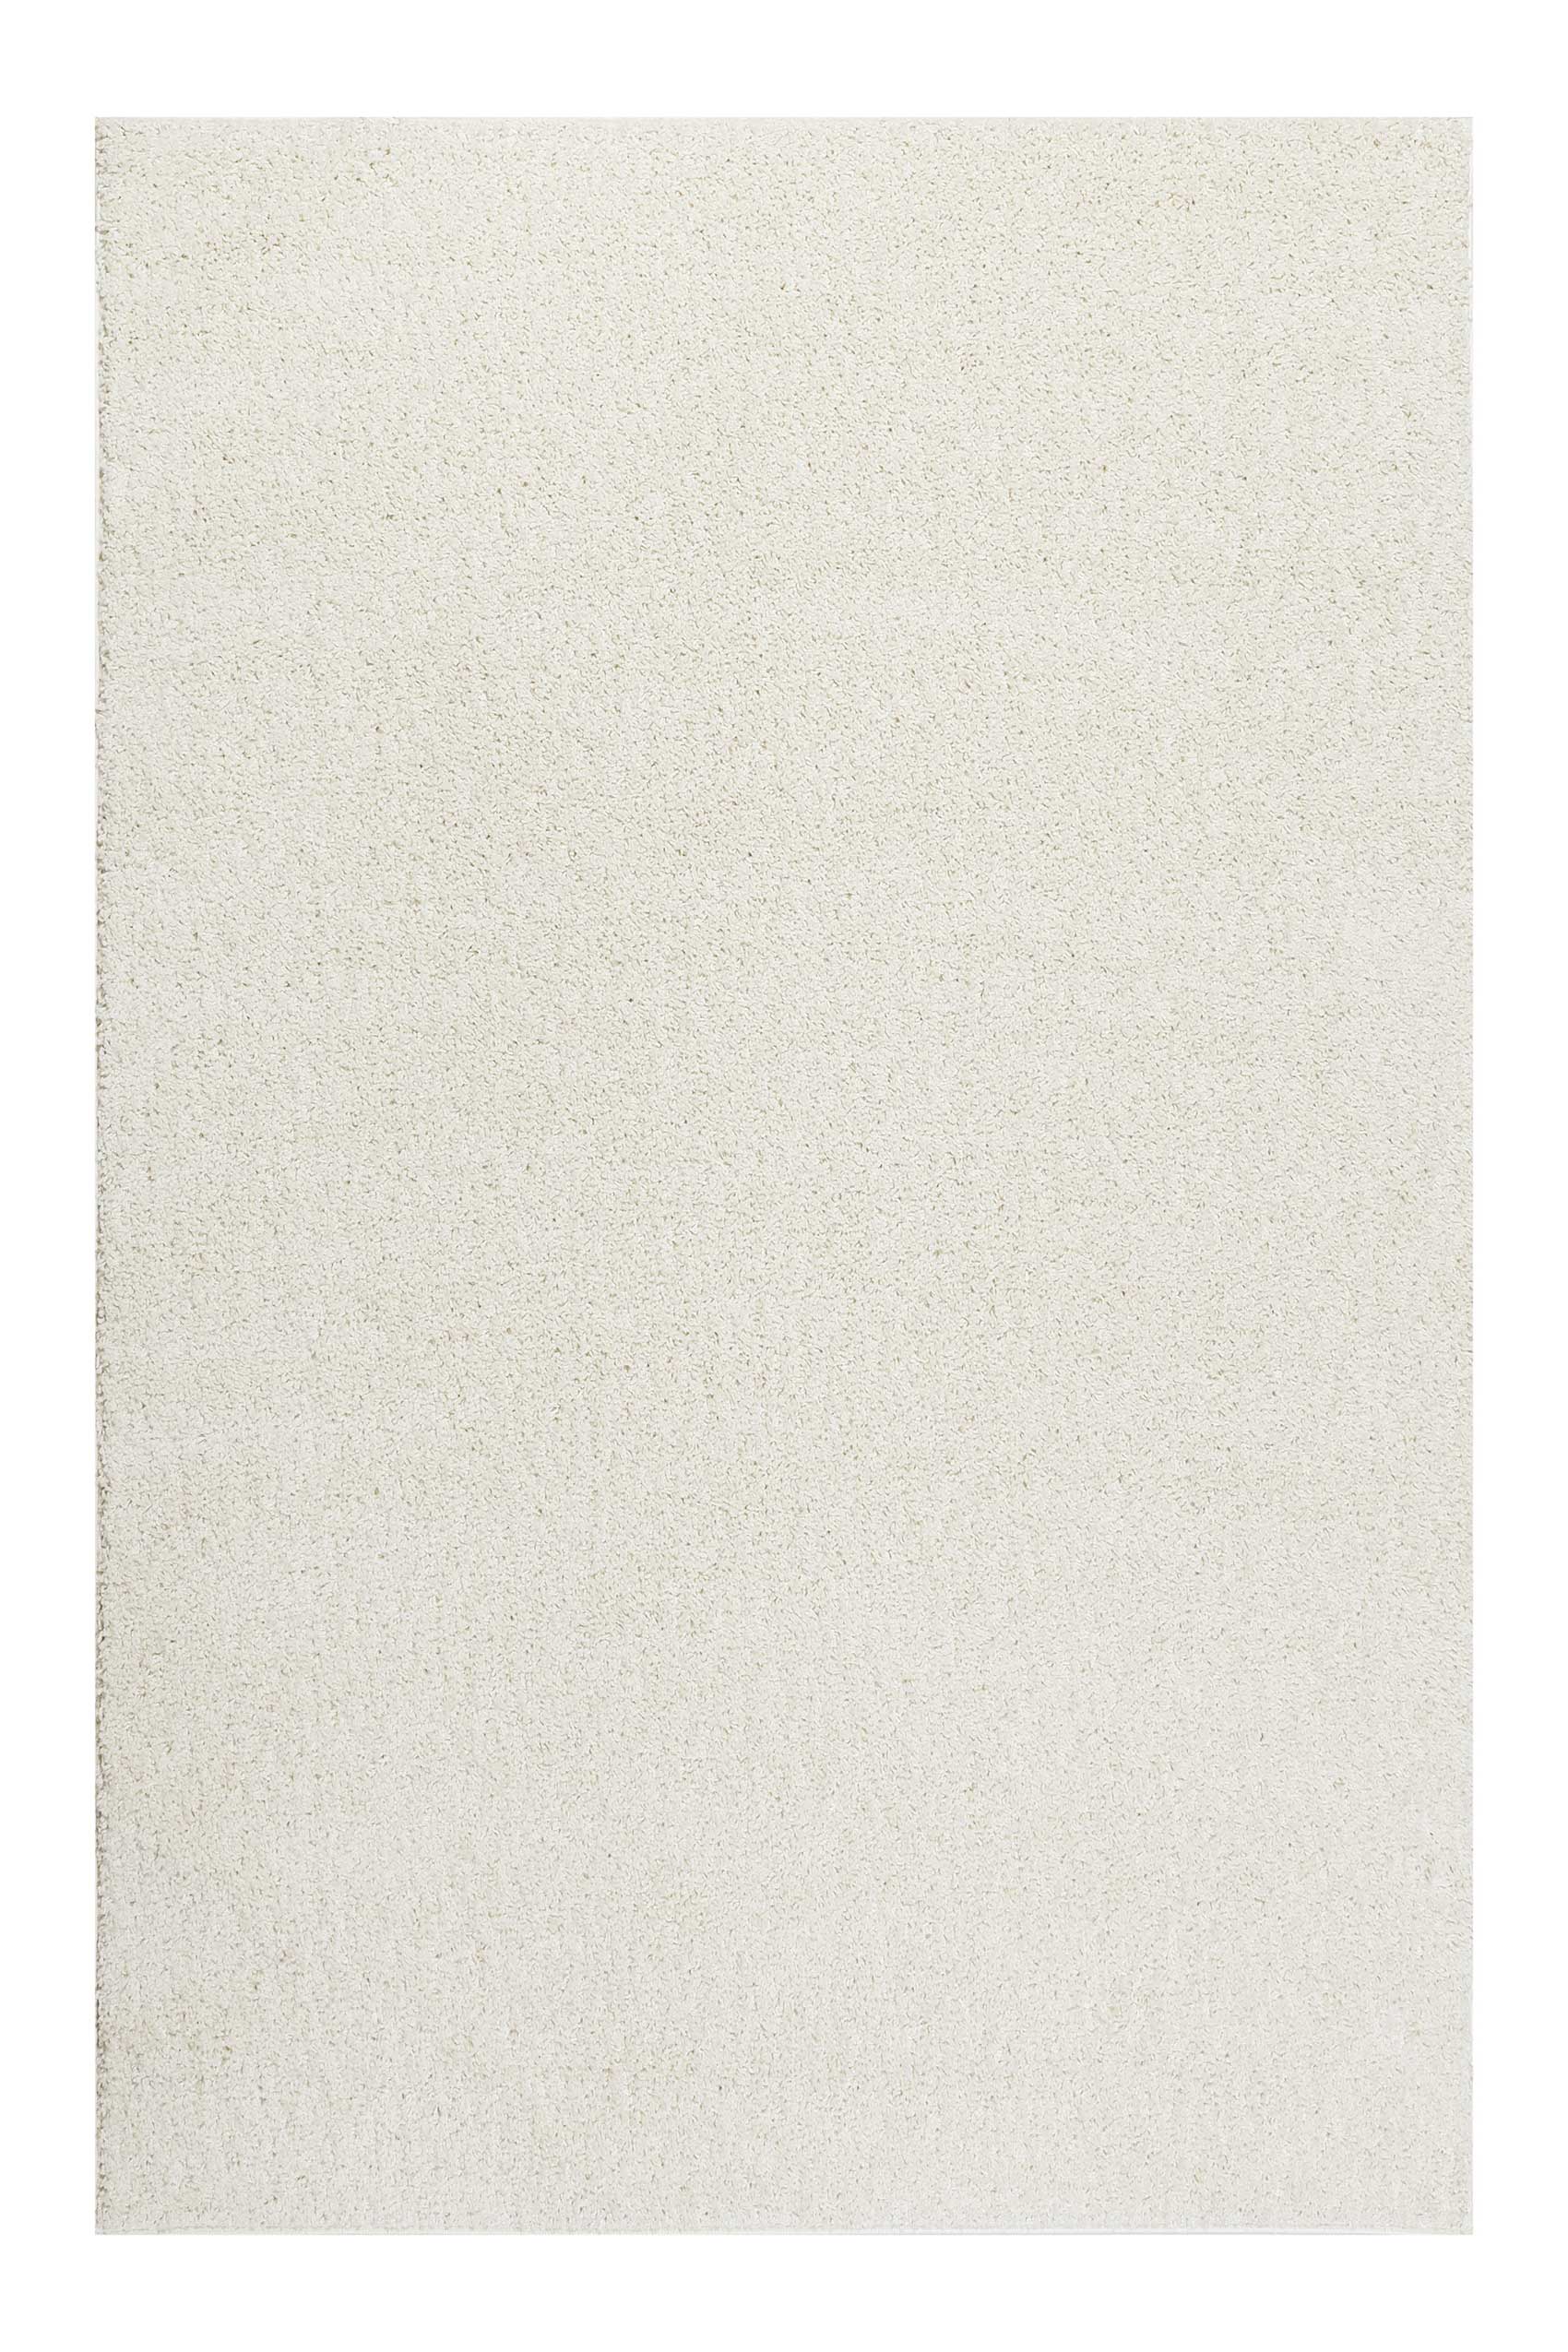 Esprit Teppich Creme Weiß Hochflor » #Whisper Shag « – Outlet-Teppiche